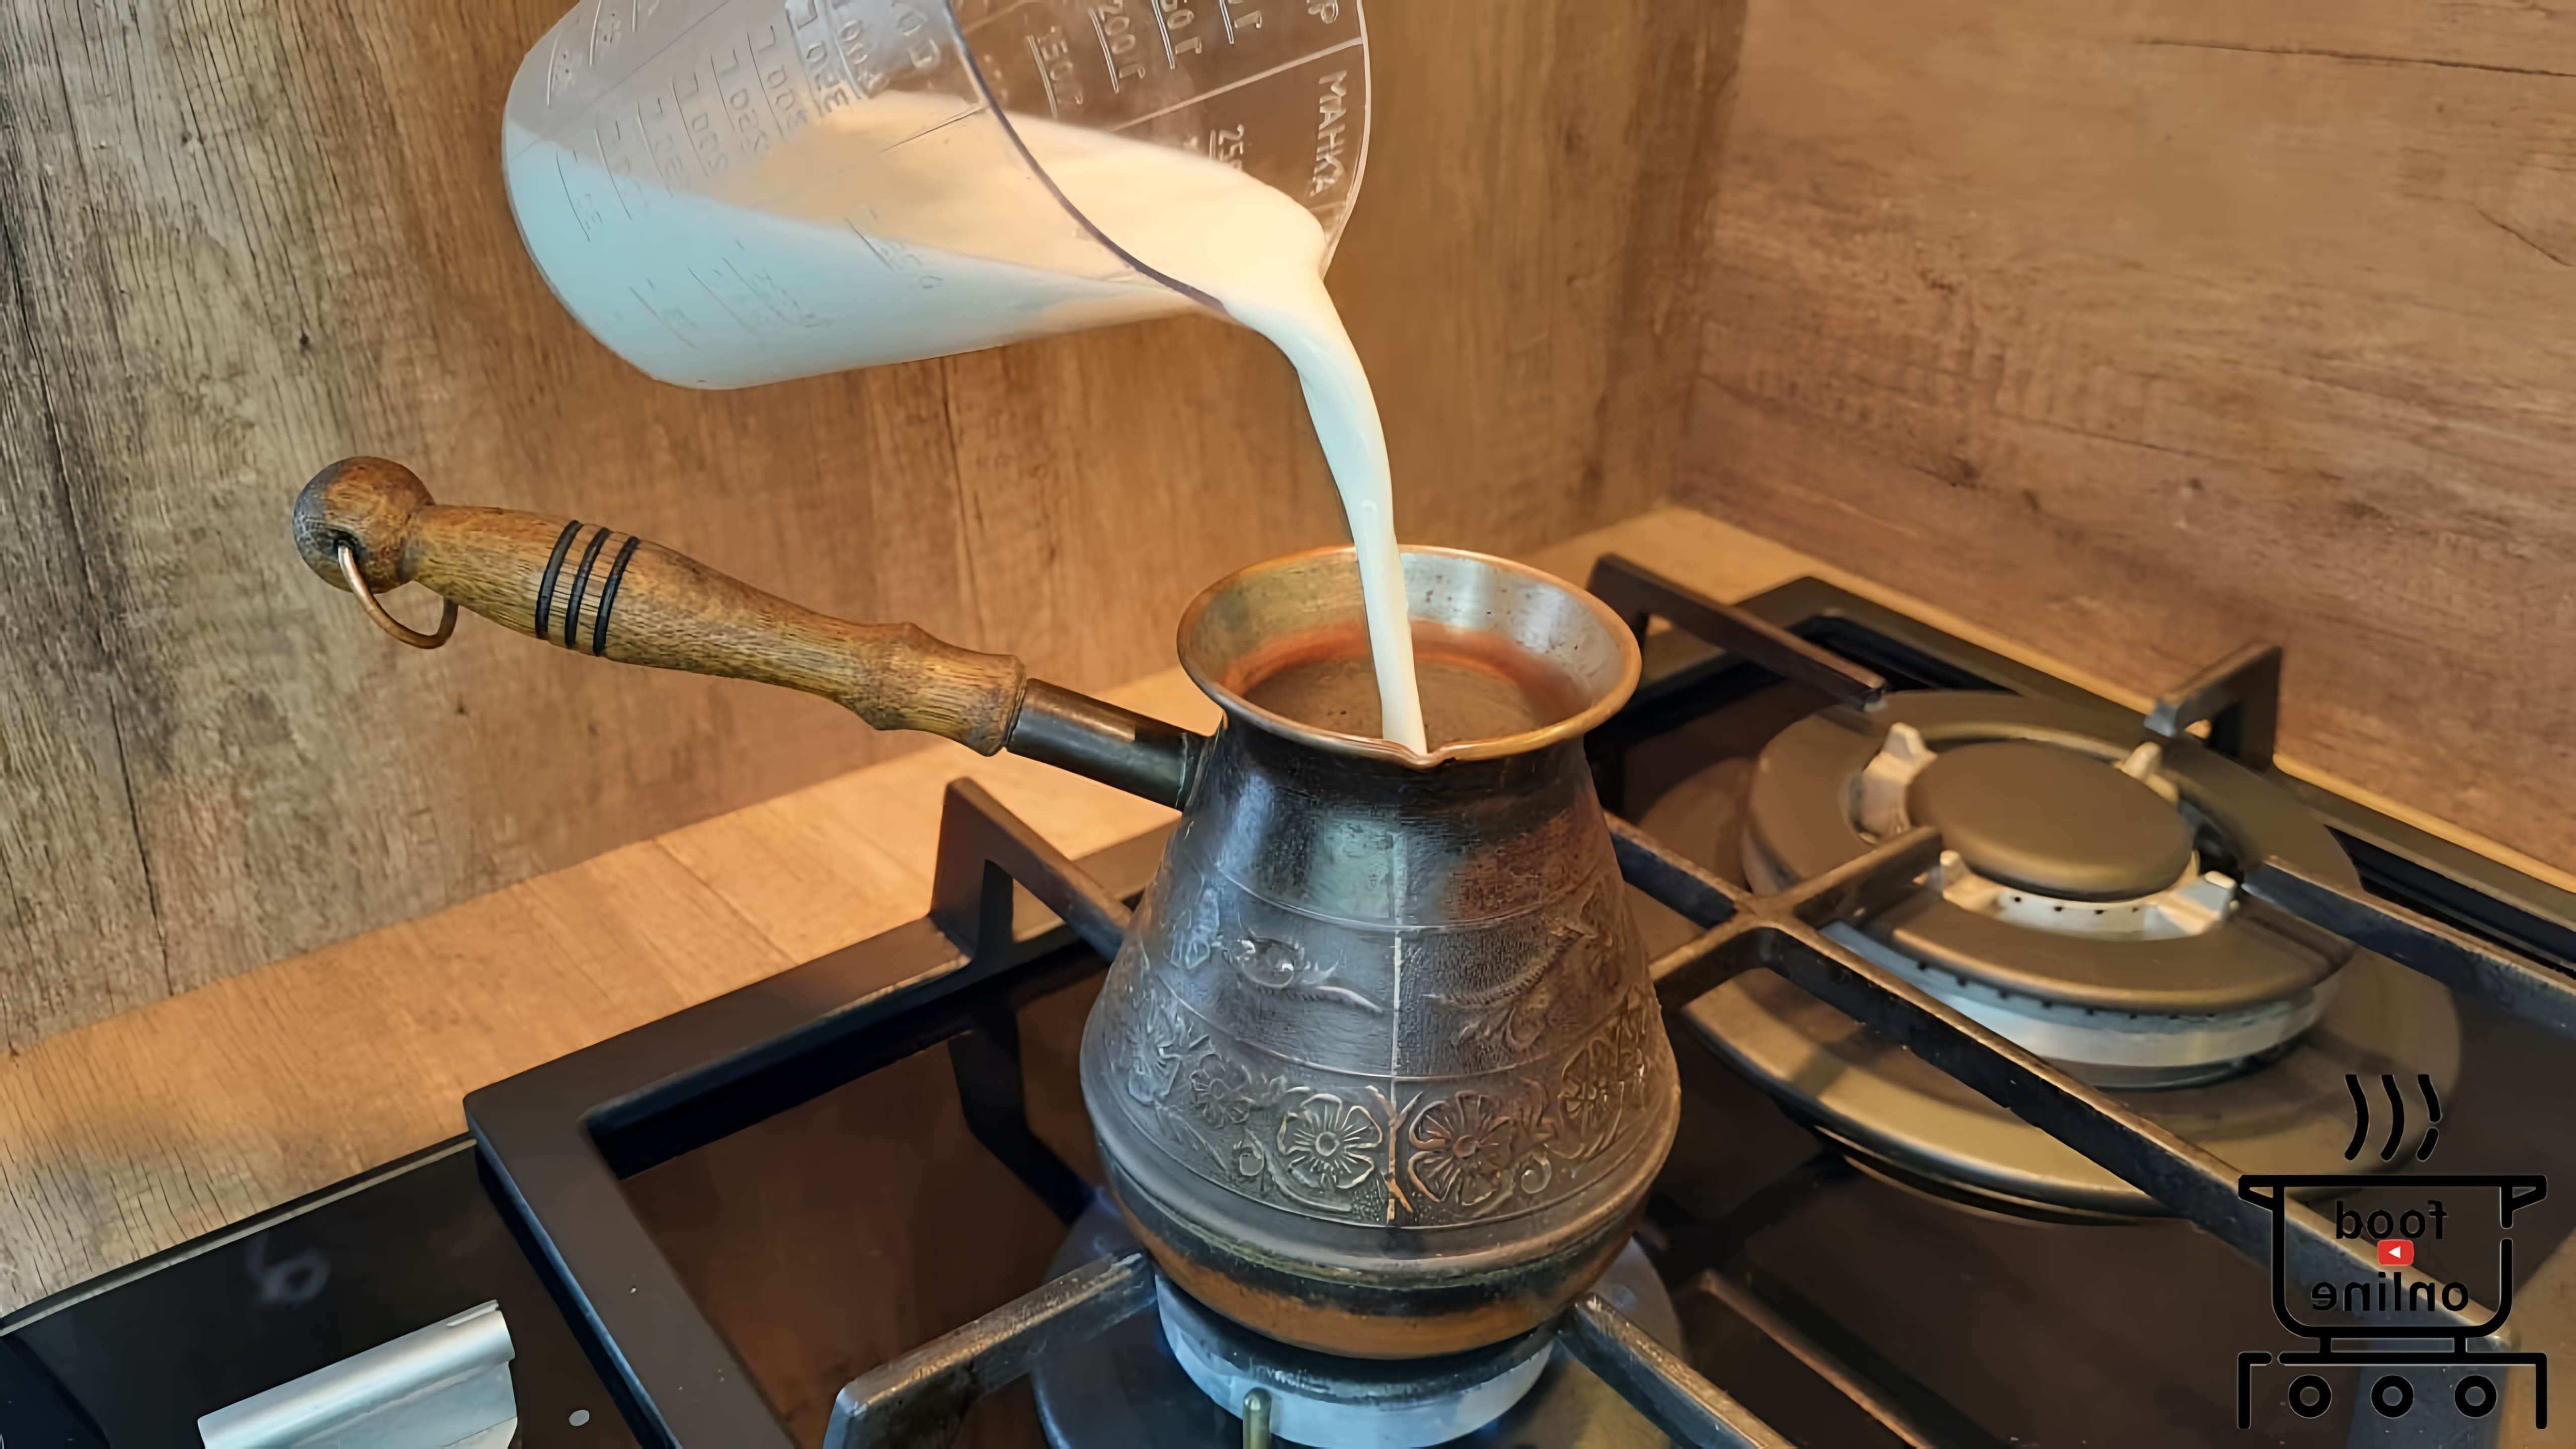 Кофе с кардамоном на молоке - это вкусный и ароматный напиток, который можно приготовить в домашних условиях